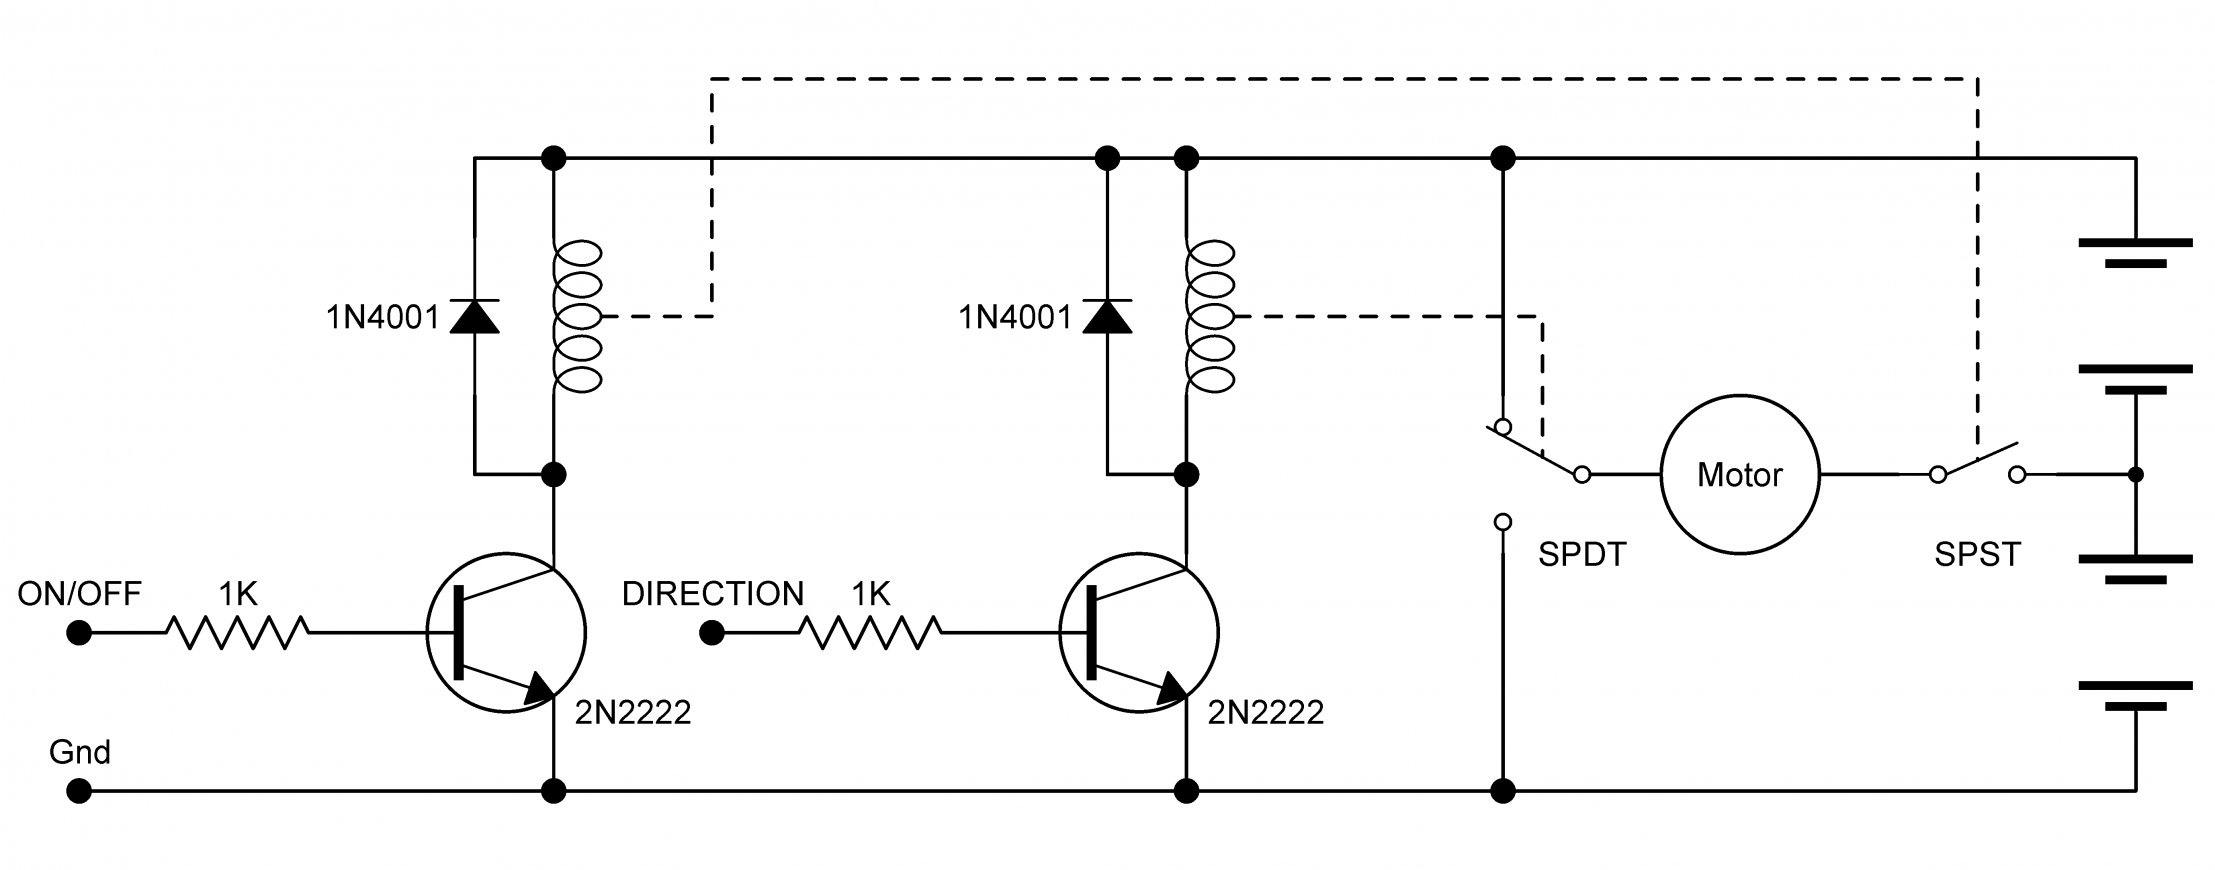 8 Pin Relay Wiring Diagram - Cadician's Blog